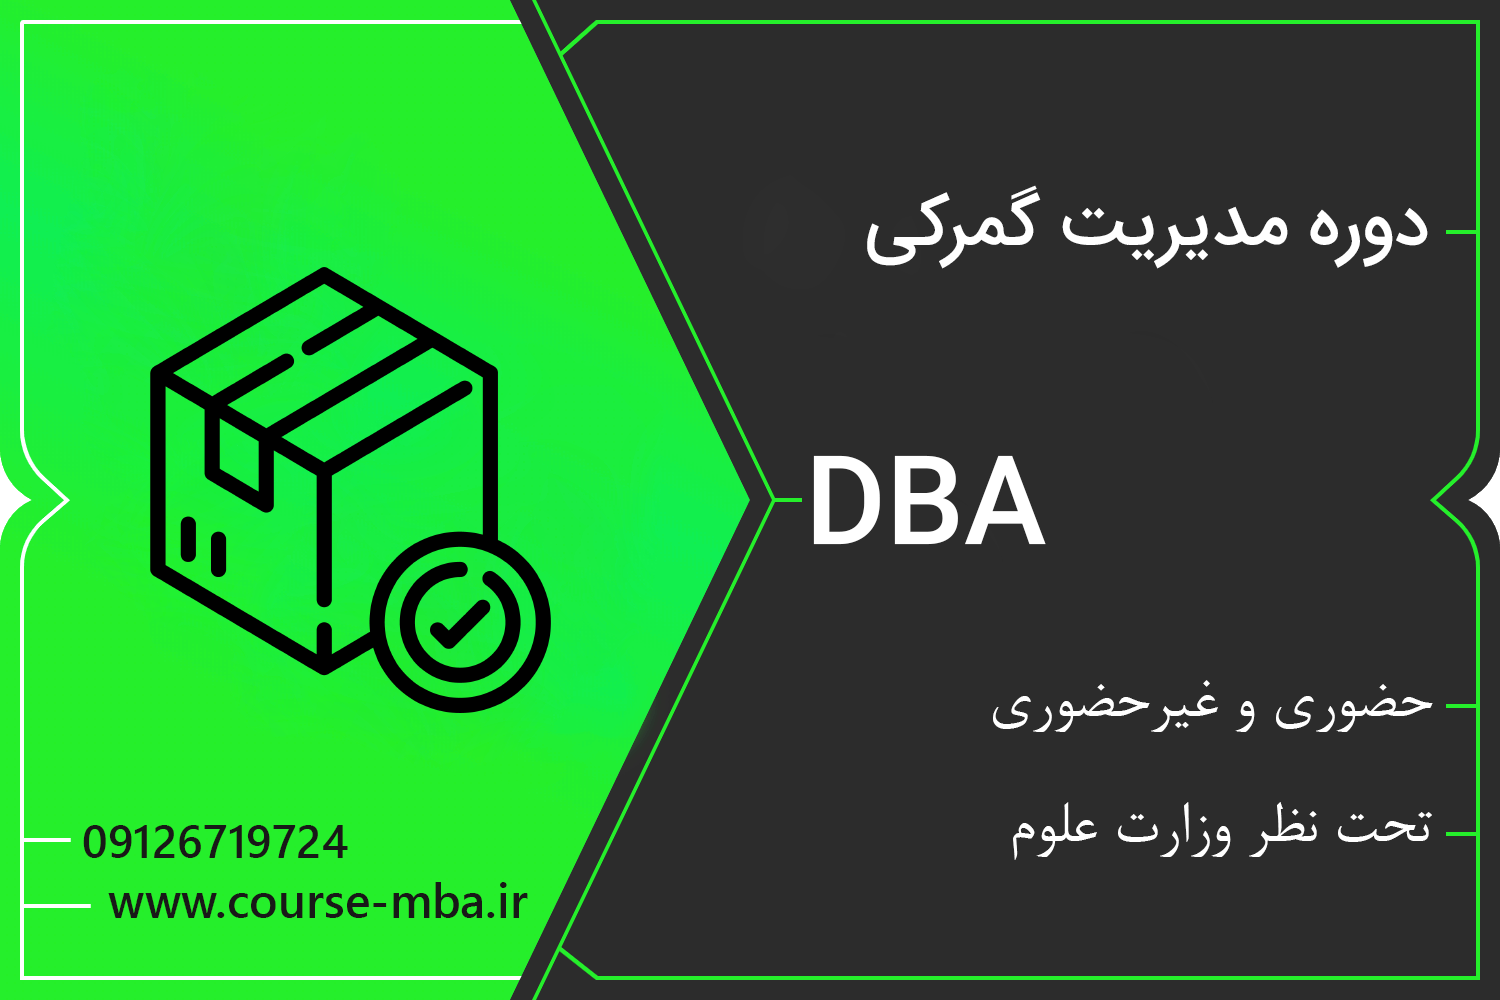 دوره DBA مدیریت گمرک | مدرک DBA مدیریت گمرک